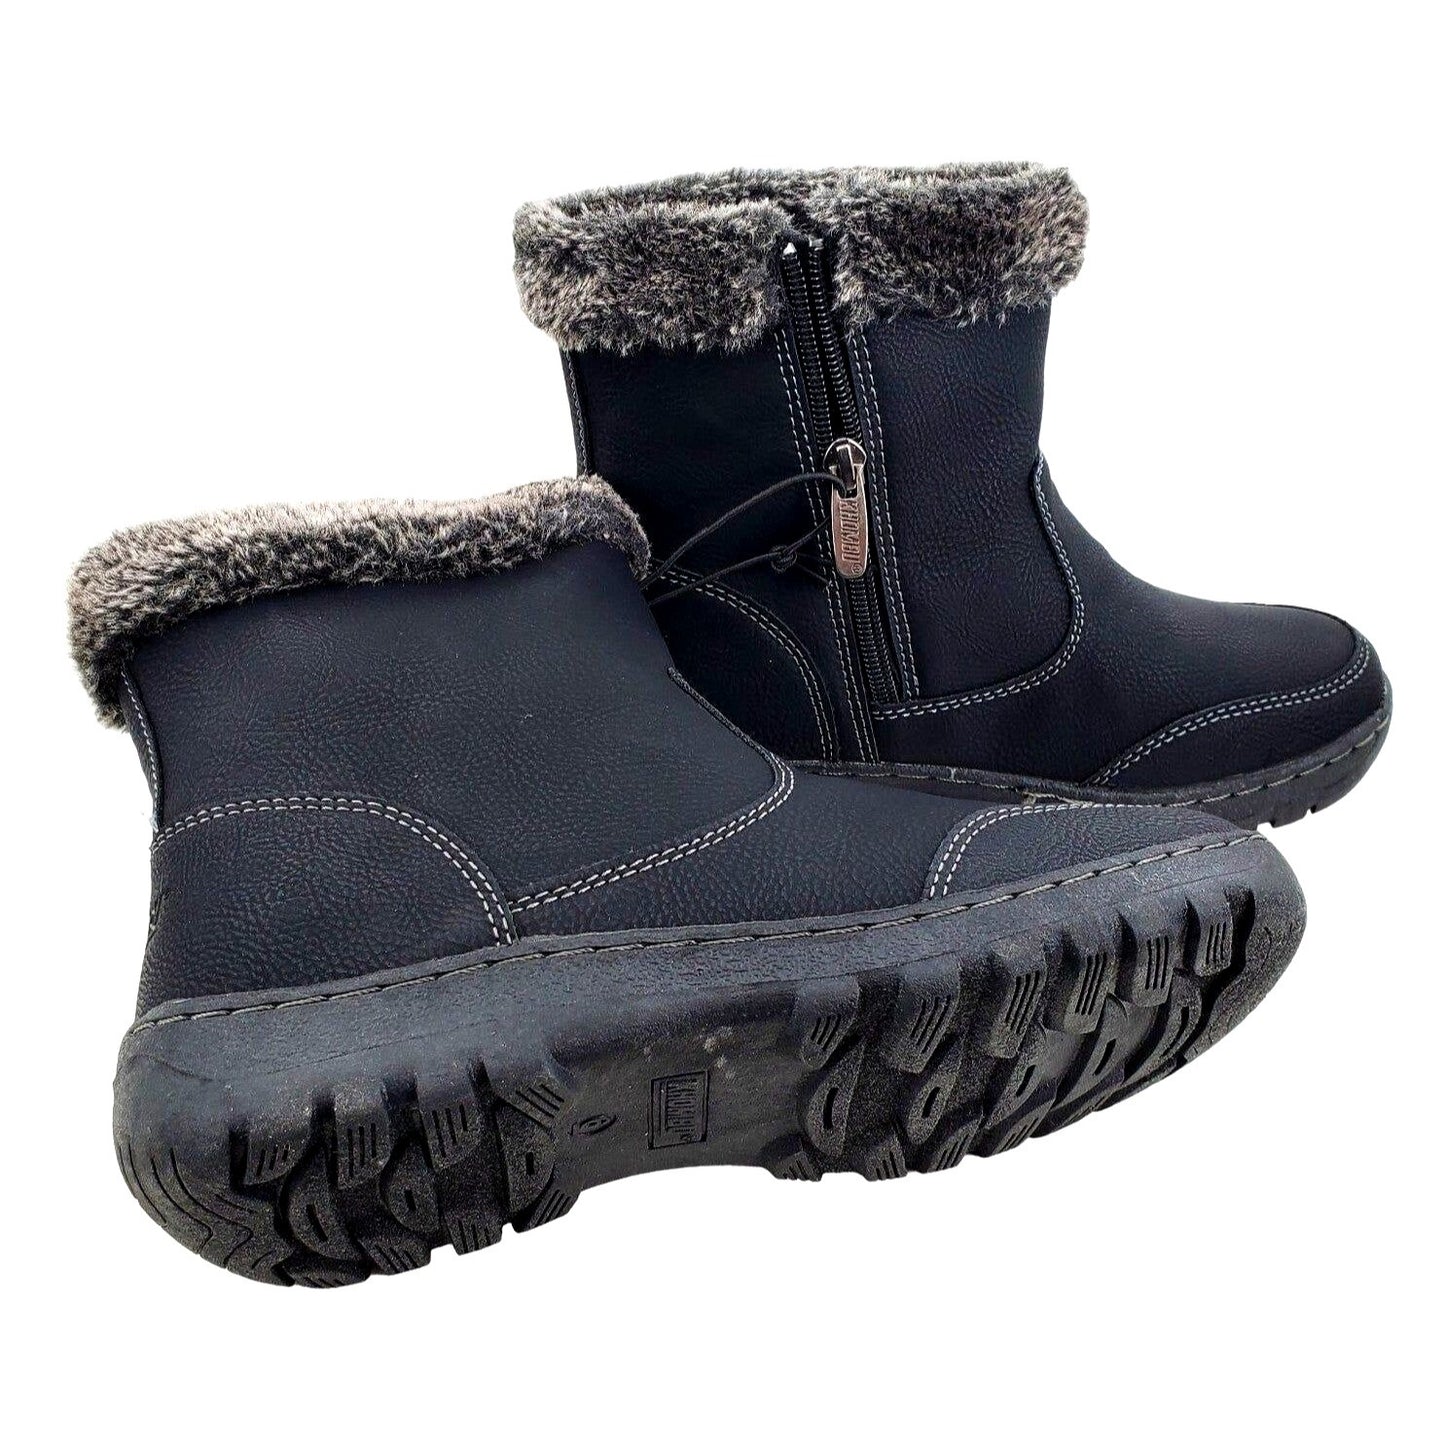 KHOMBU Boots Woman's 8 Addison Outdoor Black Faux fur Water-repellent Shoes